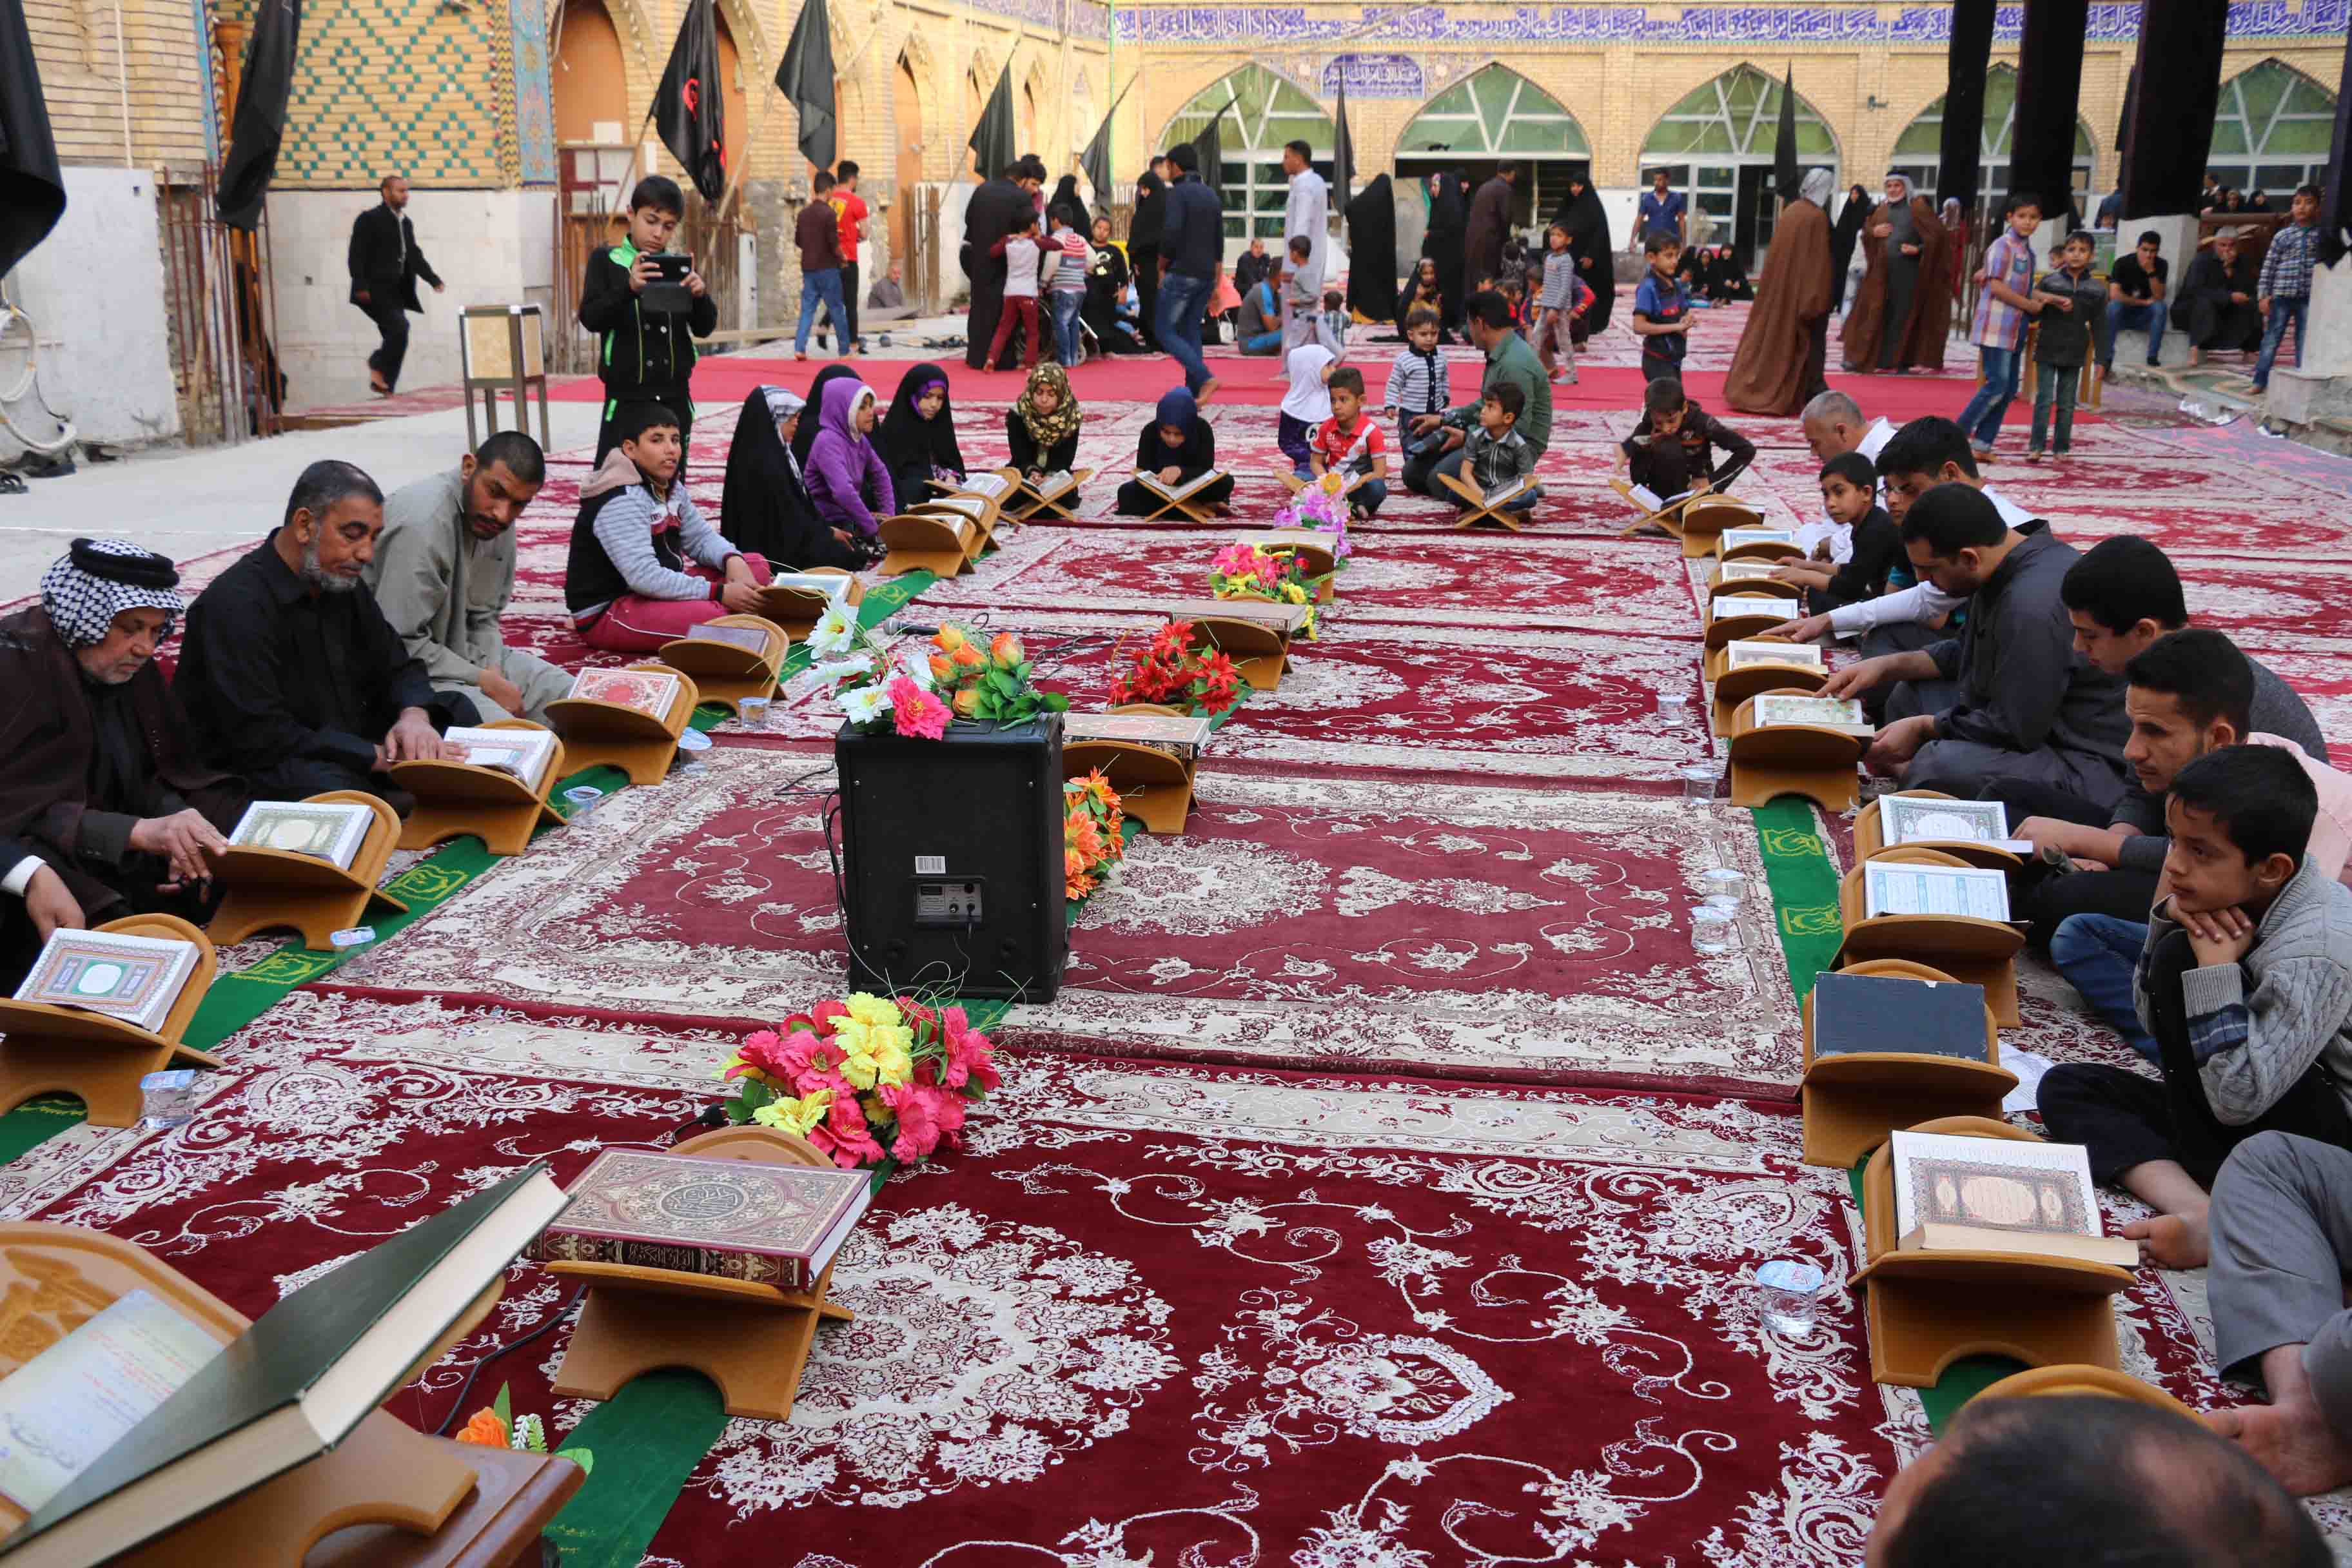 معهد القرآن الكريم فرع بابل يقيم محفلين قرآنيين مباركين